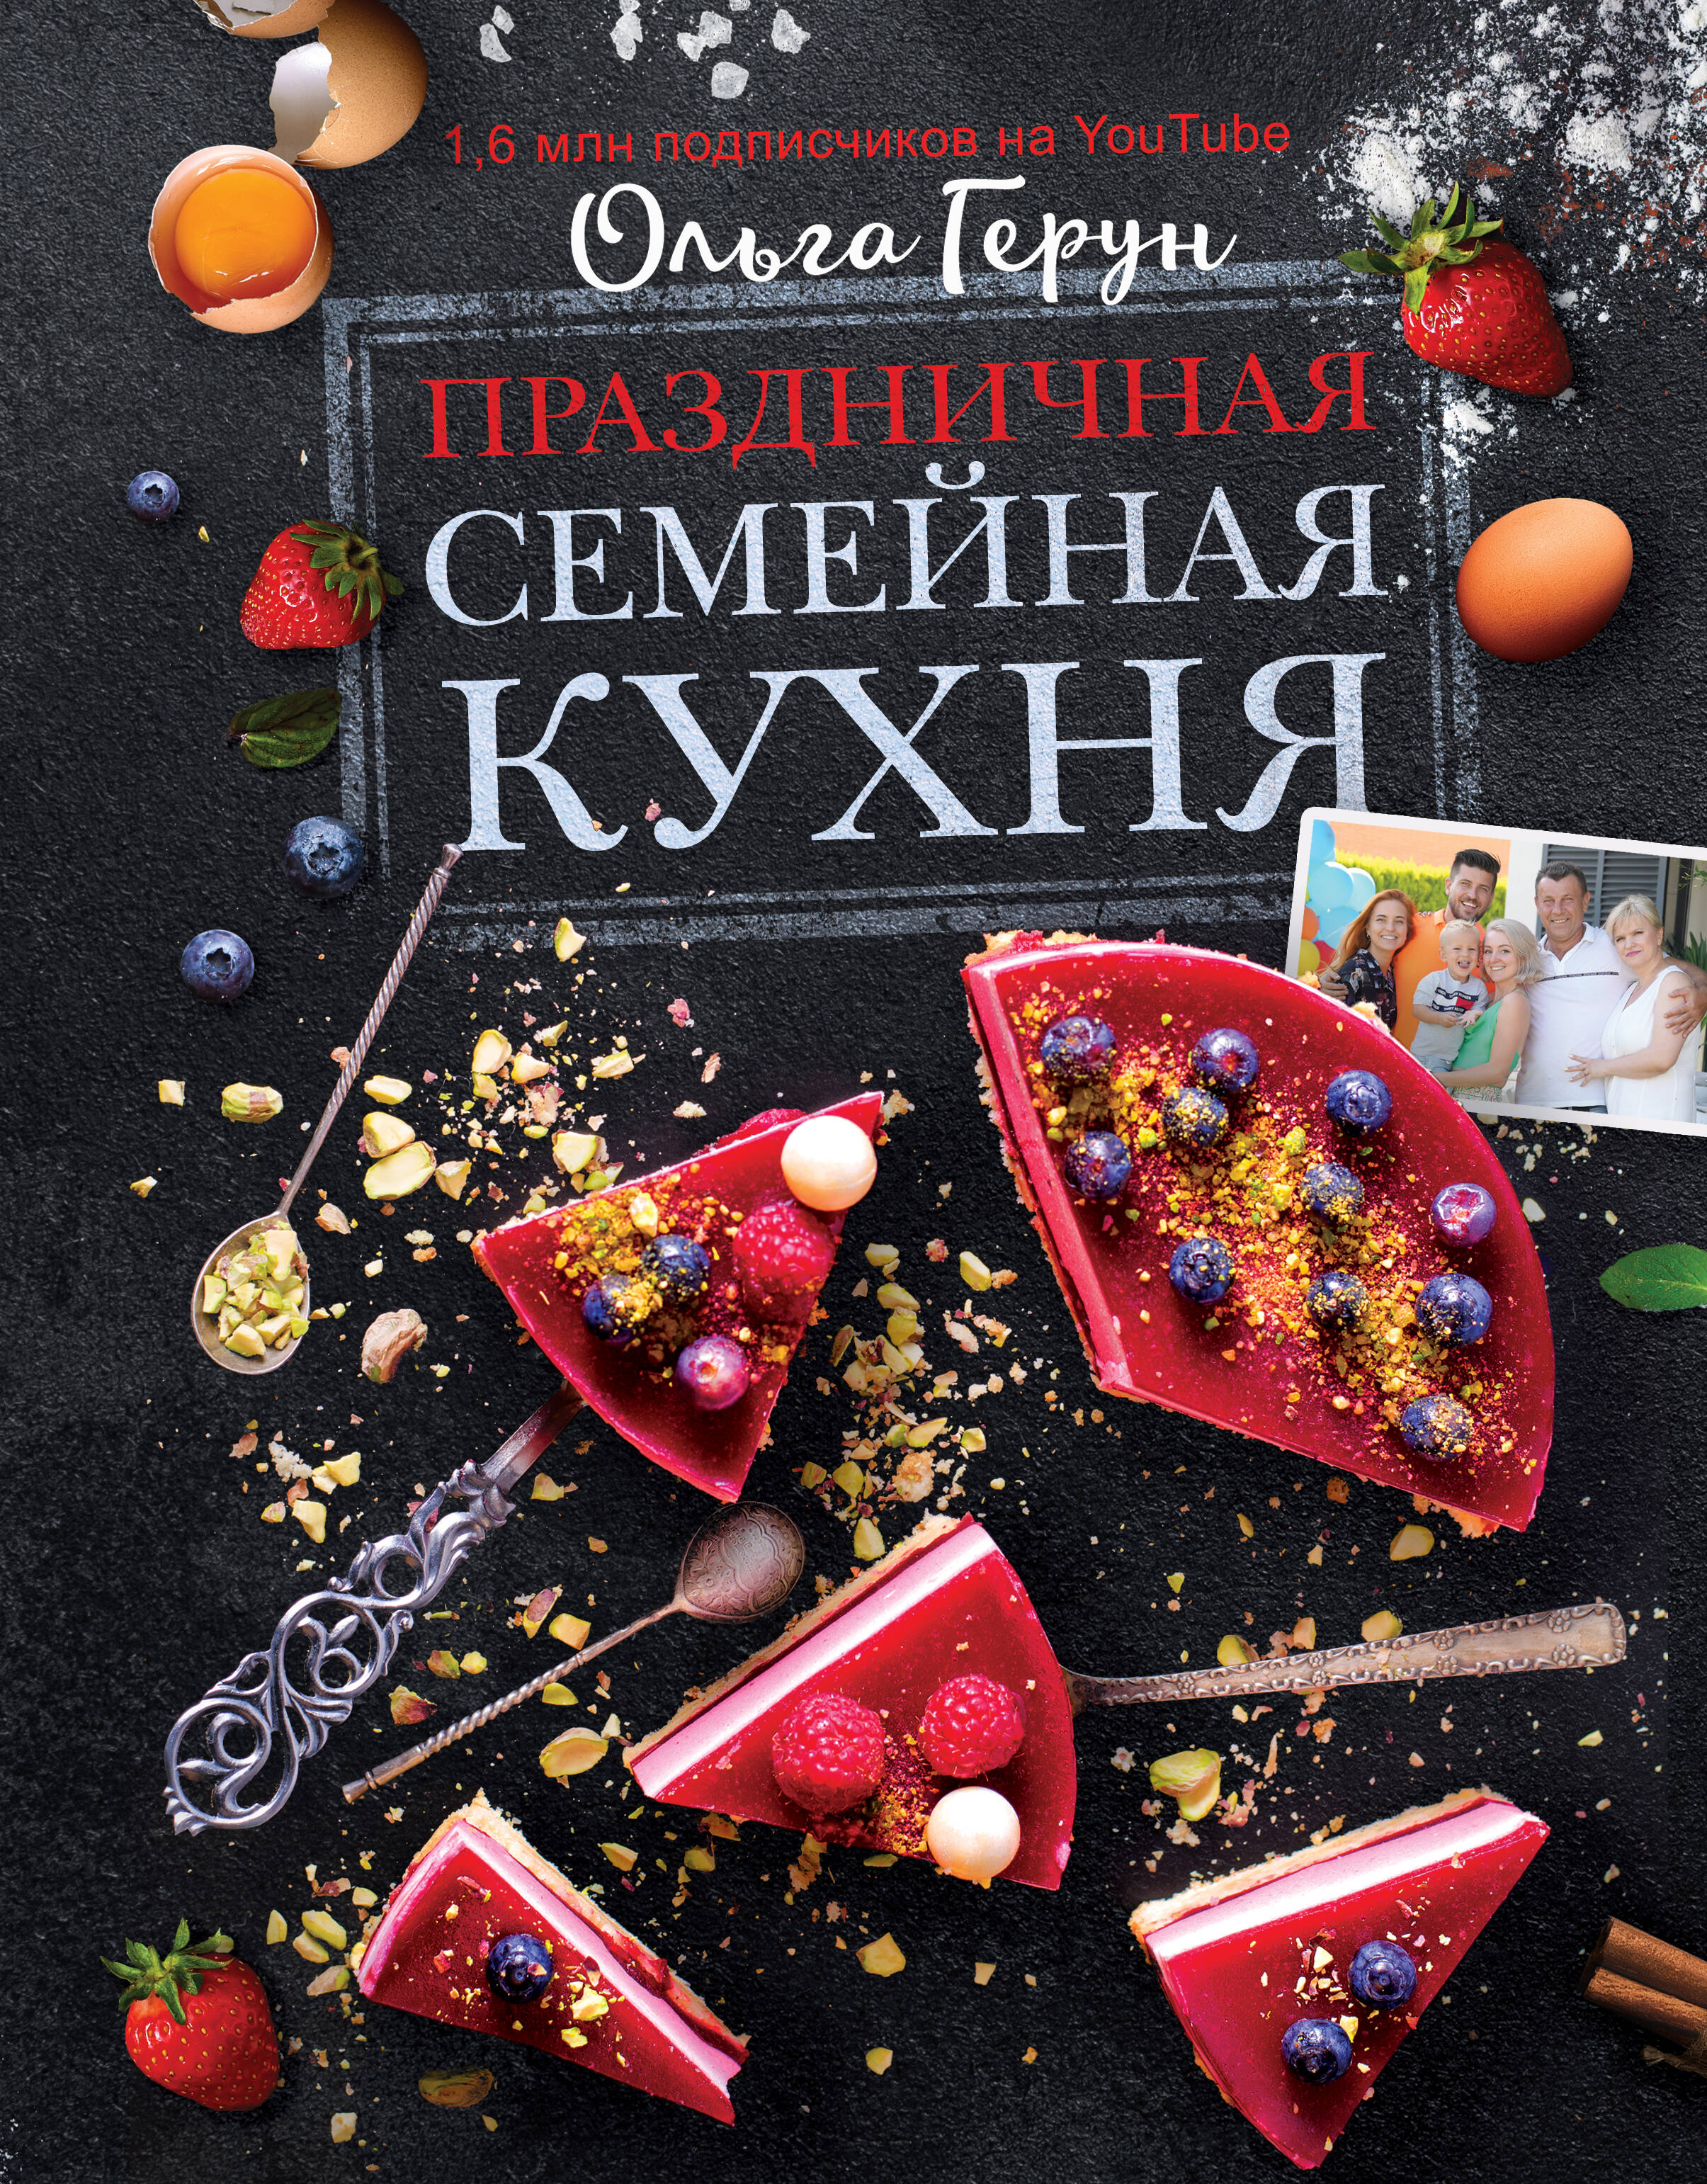 Герун Ольга Праздничная семейная кухня герун ольга васильевна праздничная семейная кухня